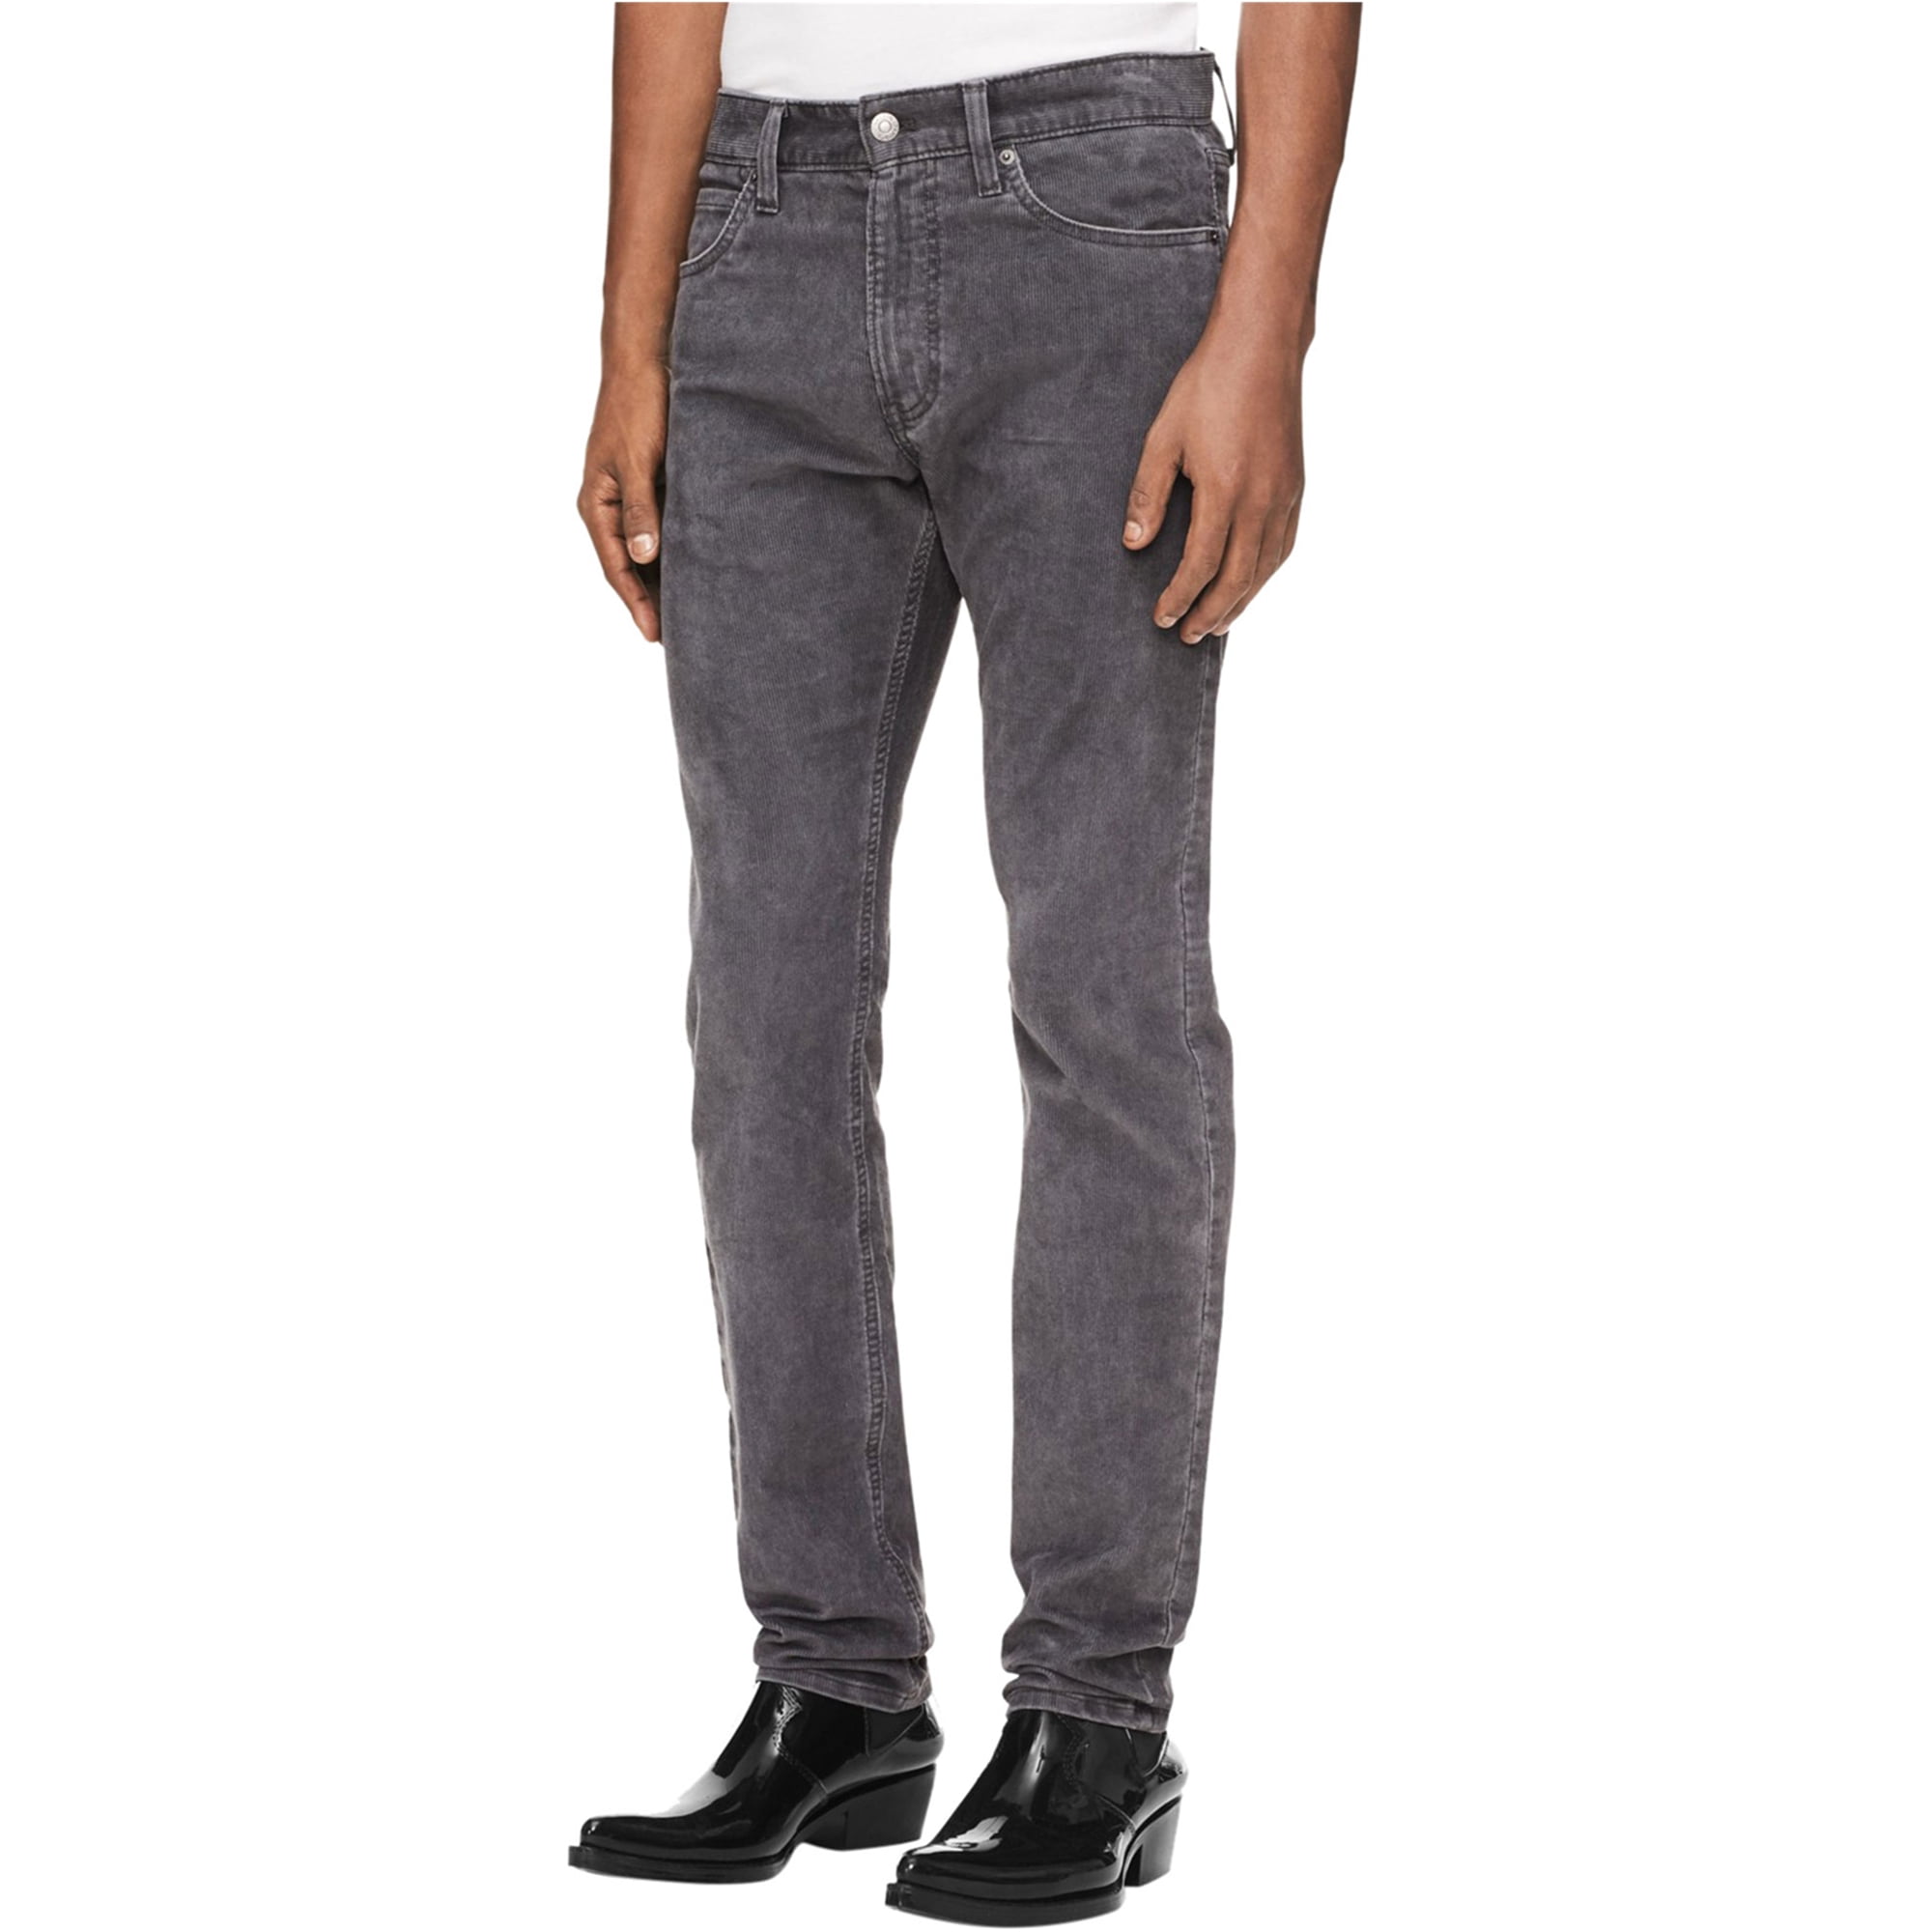 Calvin Klein Mens Slim Casual Corduroy Pants, Grey, 31W x 30L 